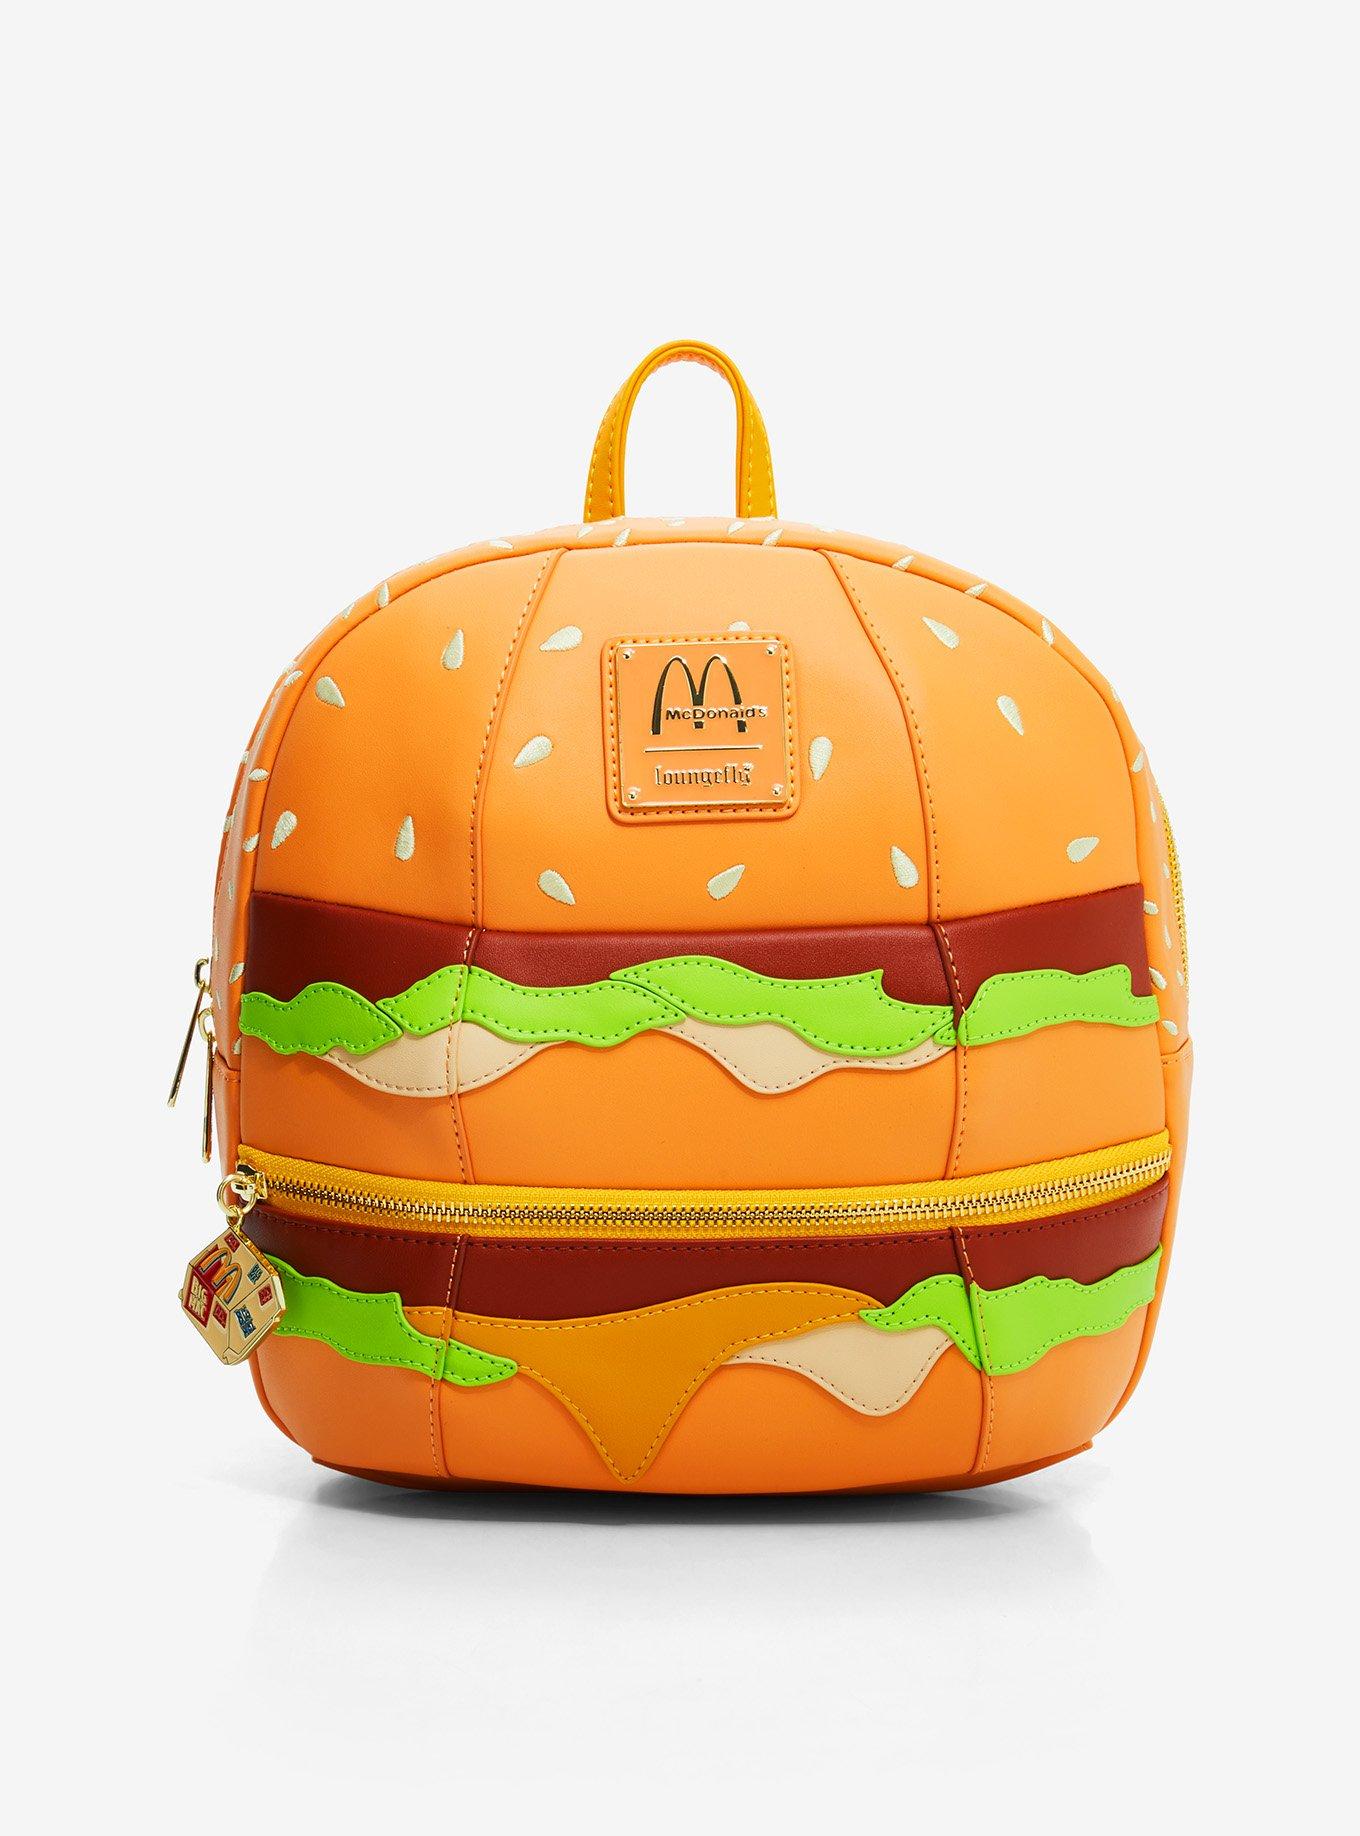 Loungefly McDonald's Big Mac Mini Backpack, , hi-res